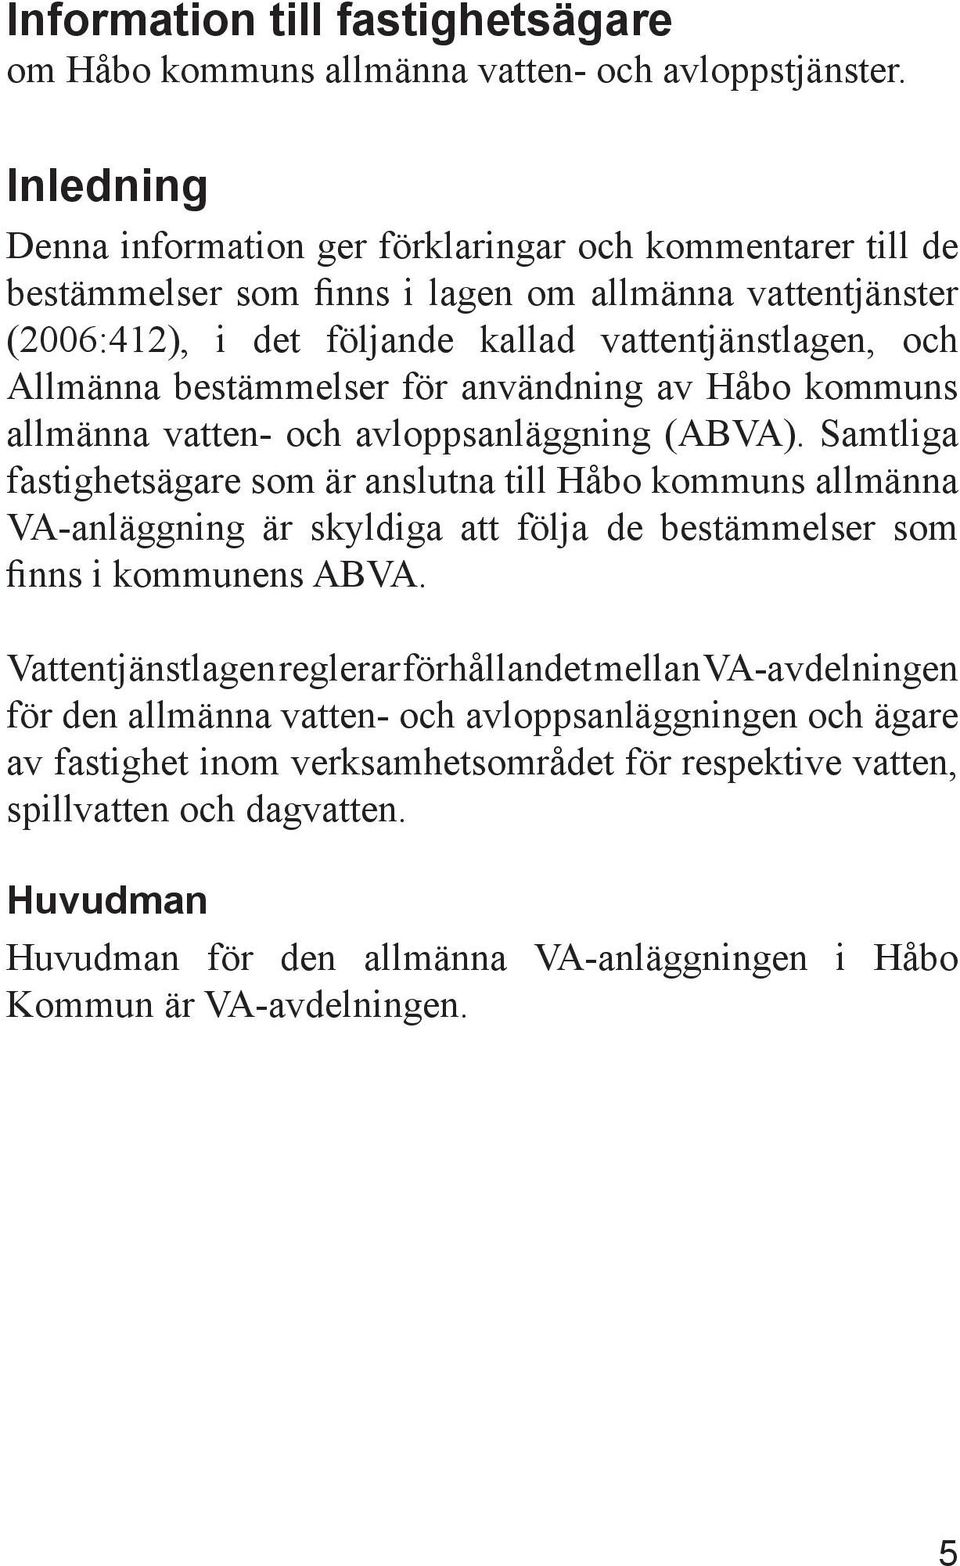 bestämmelser för användning av Håbo kommuns allmänna vatten- och avloppsanläggning (ABVA).